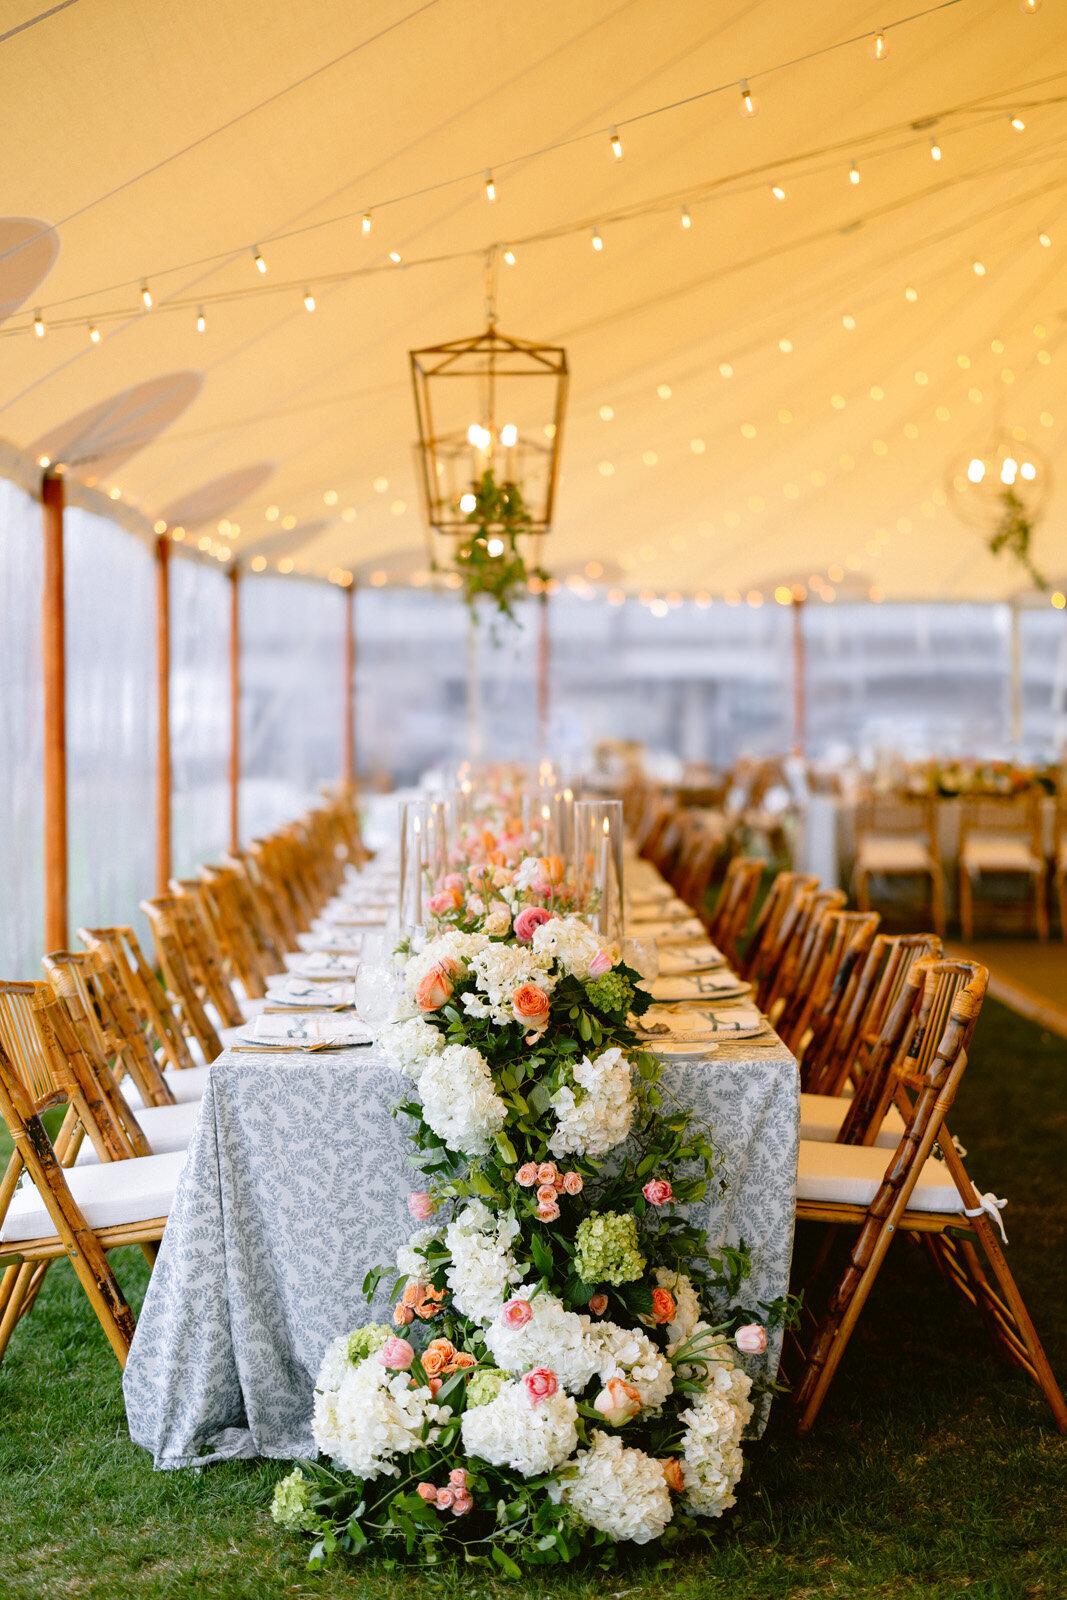 Kate-Murtaugh-Events-Weekapaug-Inn-tented-wedding-floral-garland-spring-flowers